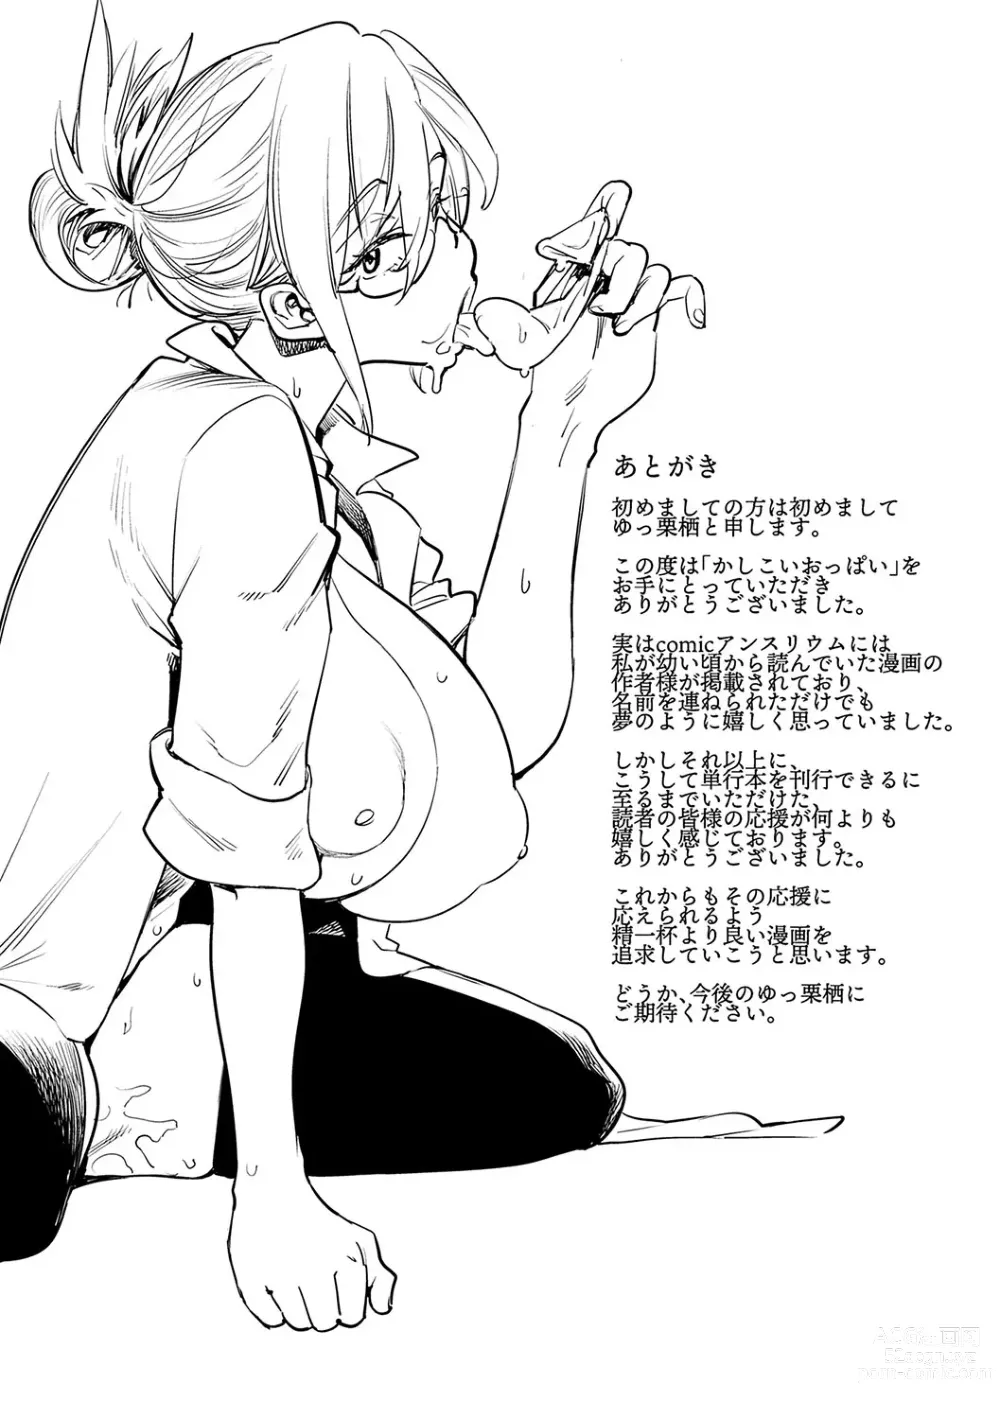 Page 224 of manga Kashikoi Oppai